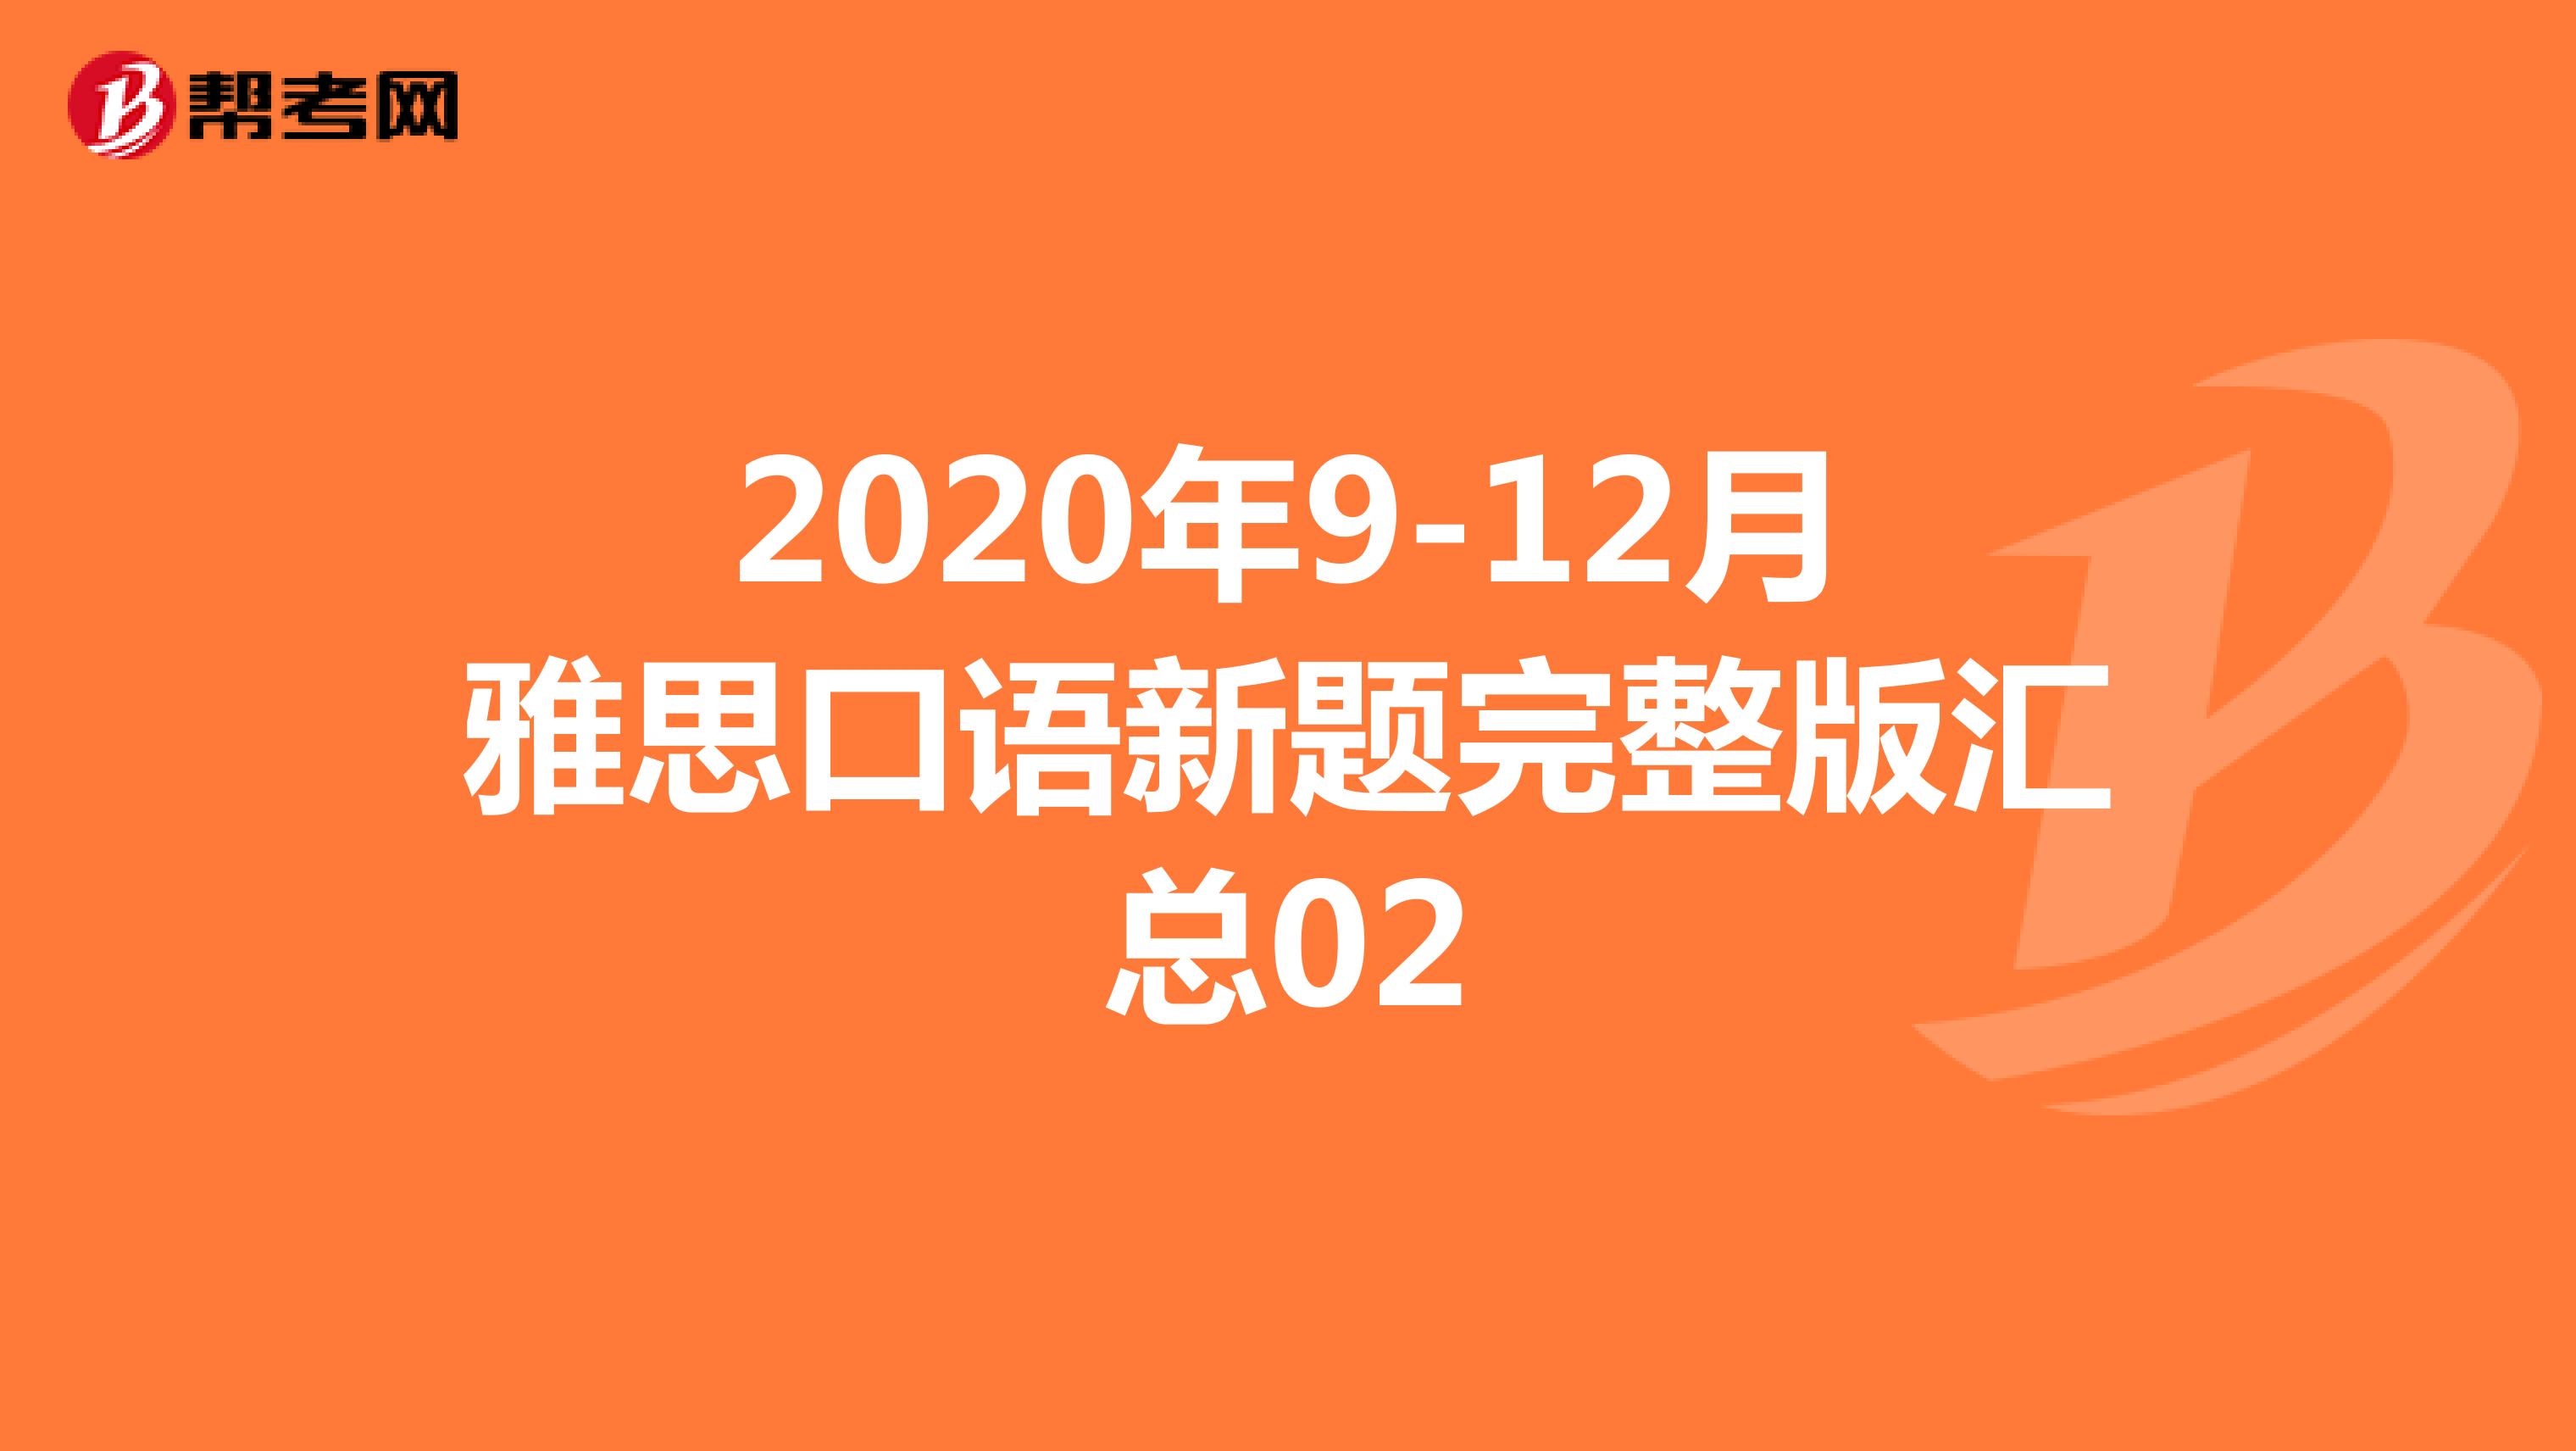 2020年9-12月雅思口语新题完整版汇总02